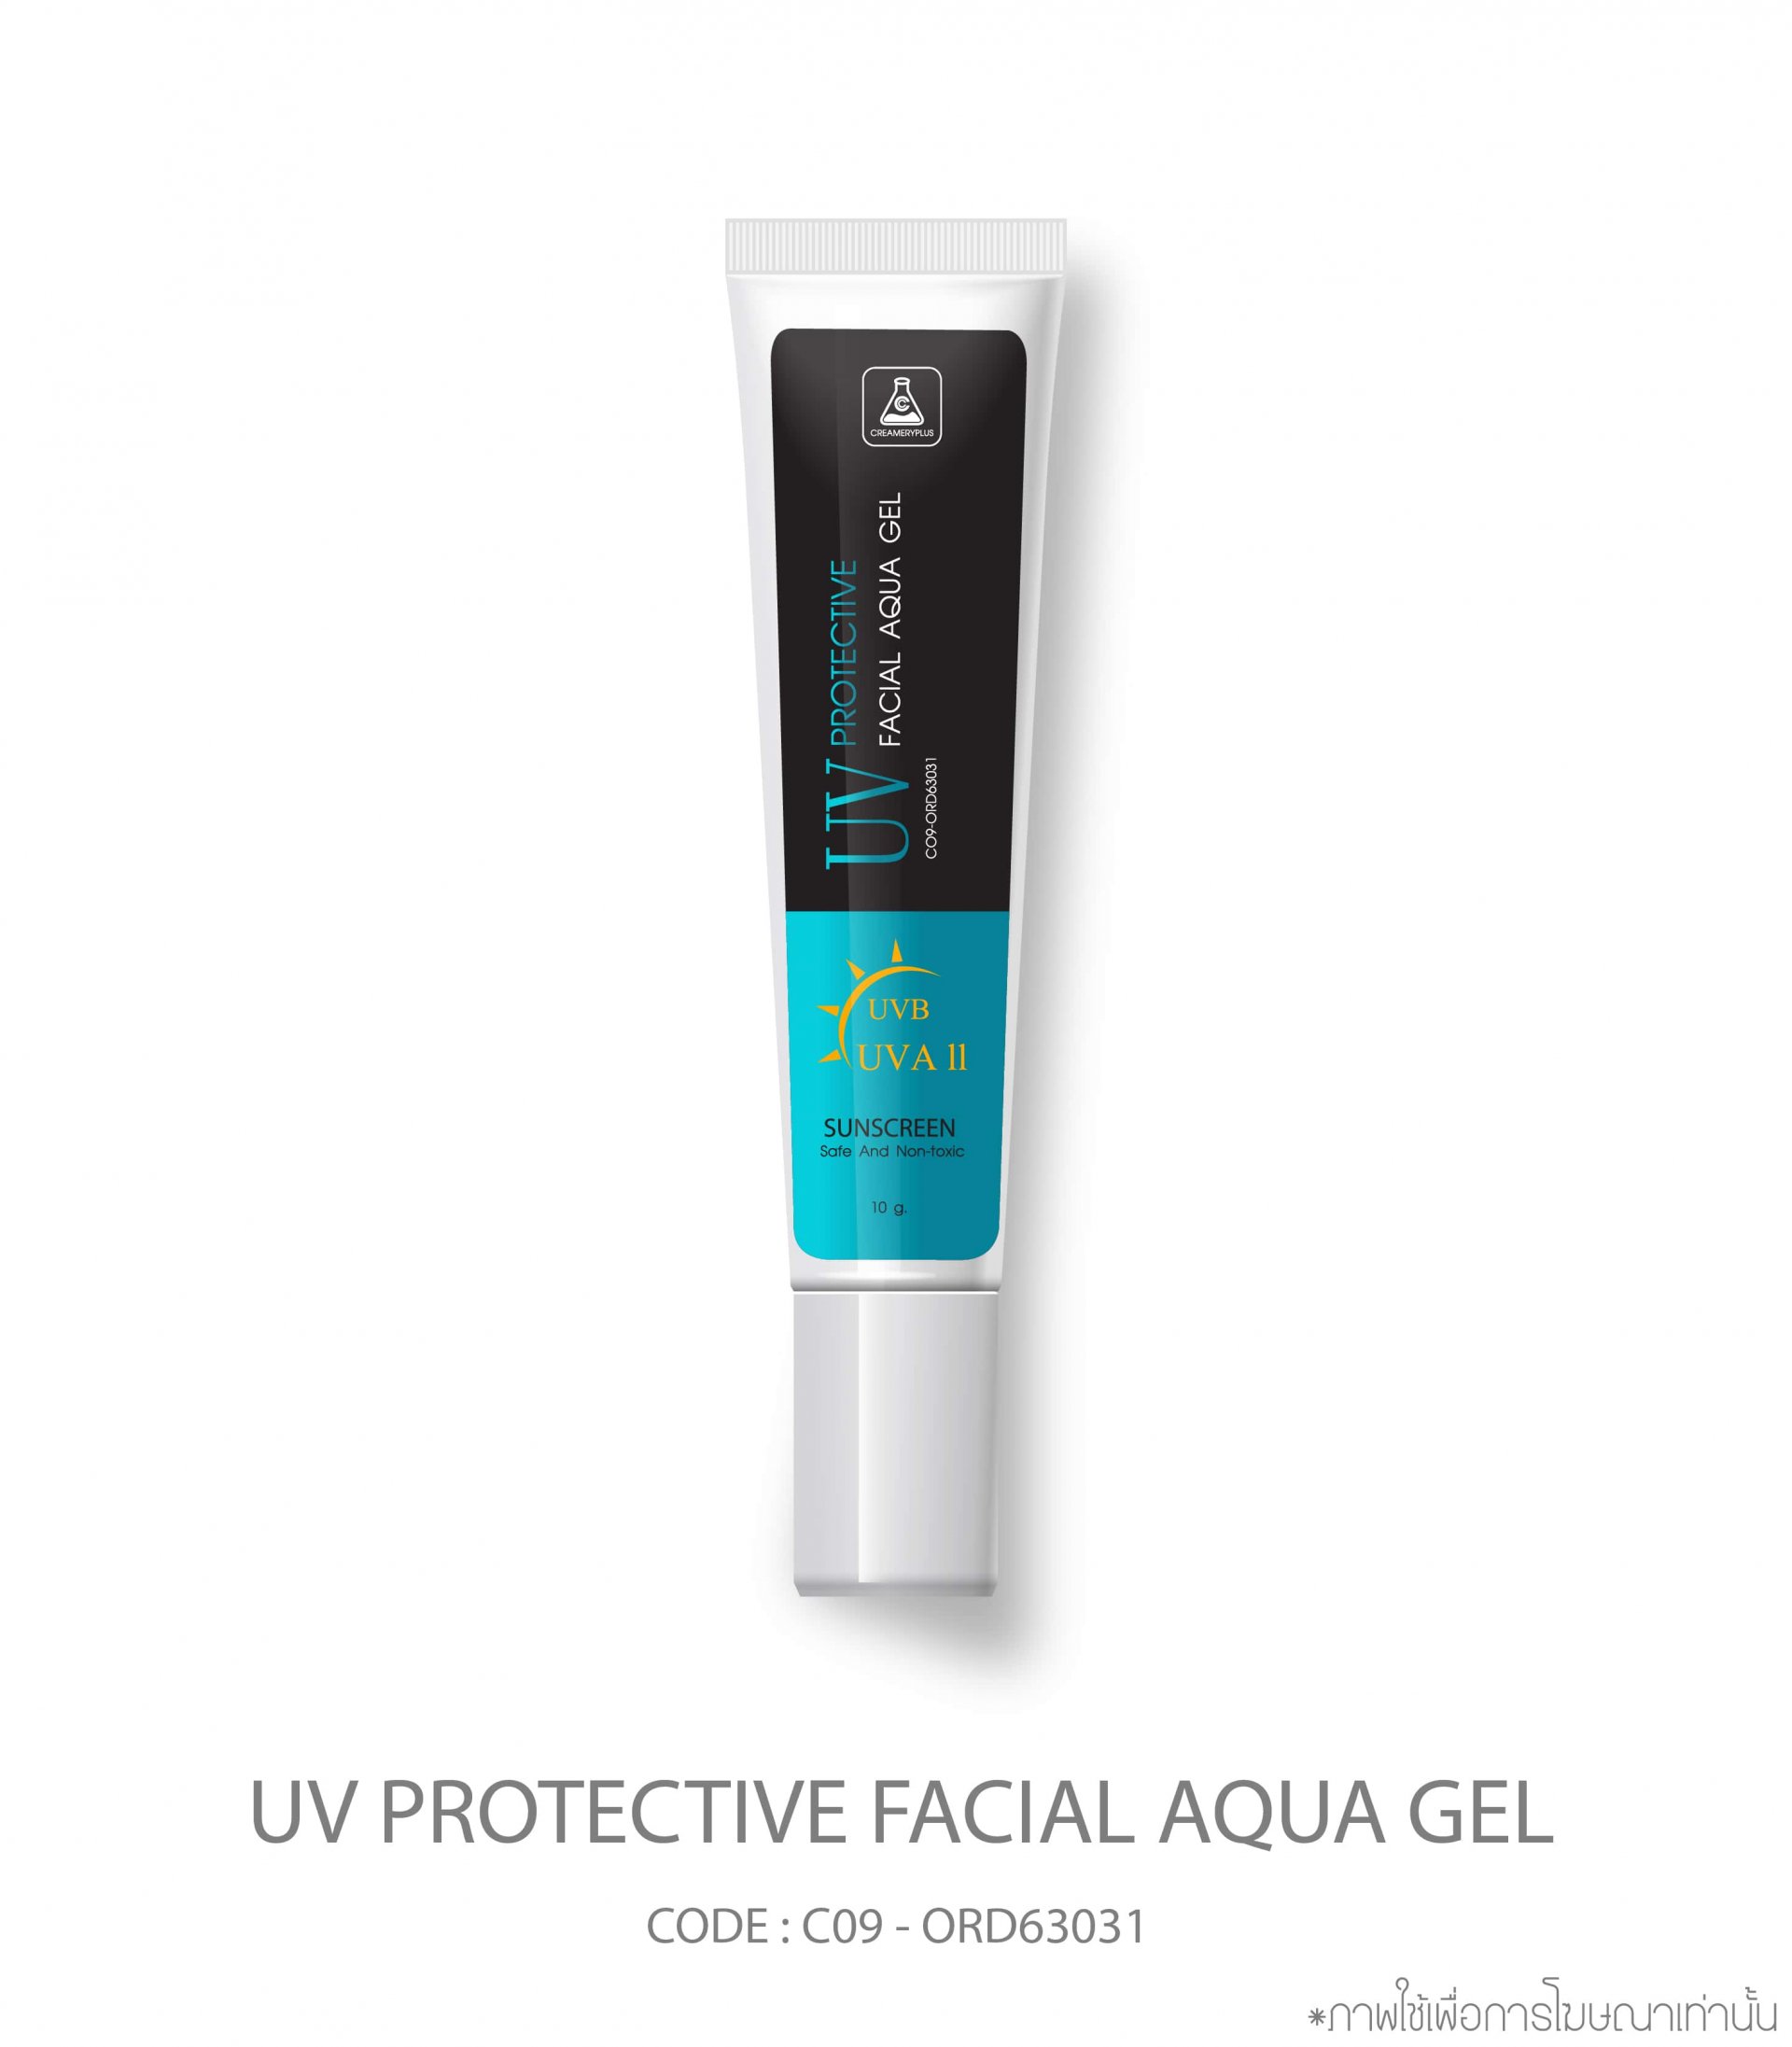 UV Protective facial aqua gel